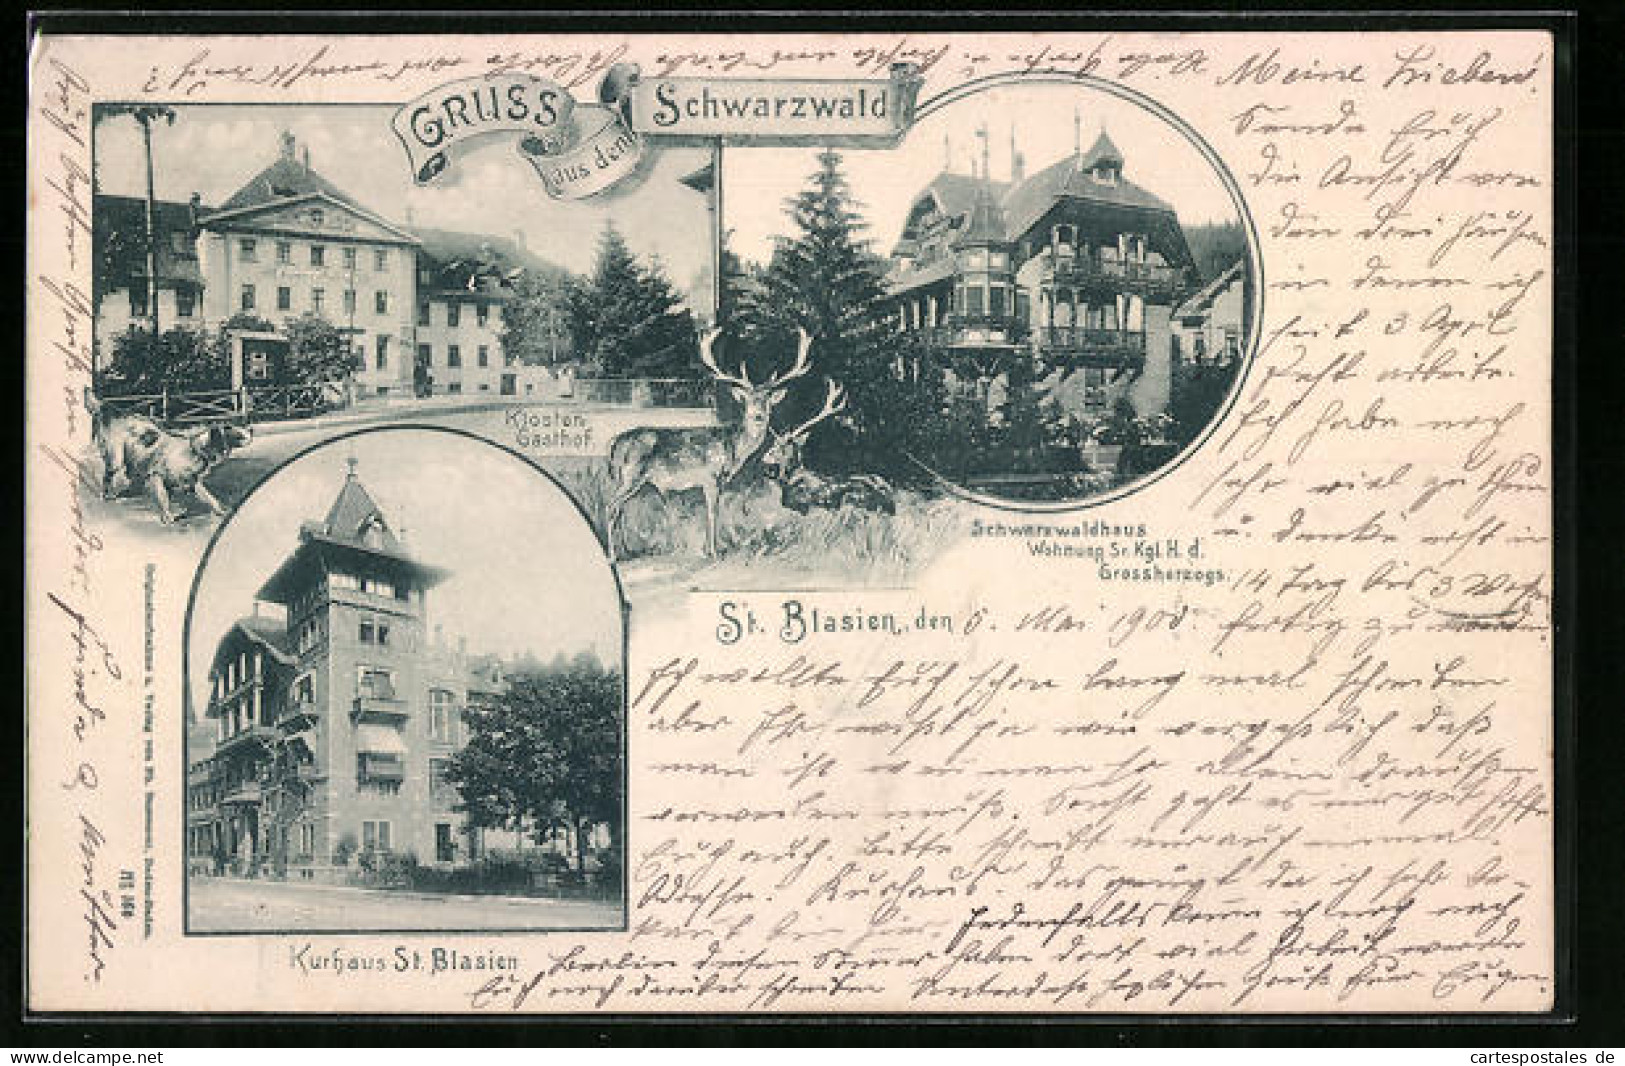 AK St. Blasien, Kurhaus St. Blasien, Kloster-Gasthof, Schwarzwaldhaus Wohnung Sr. Kgl. H. D. Grossherzogs  - St. Blasien